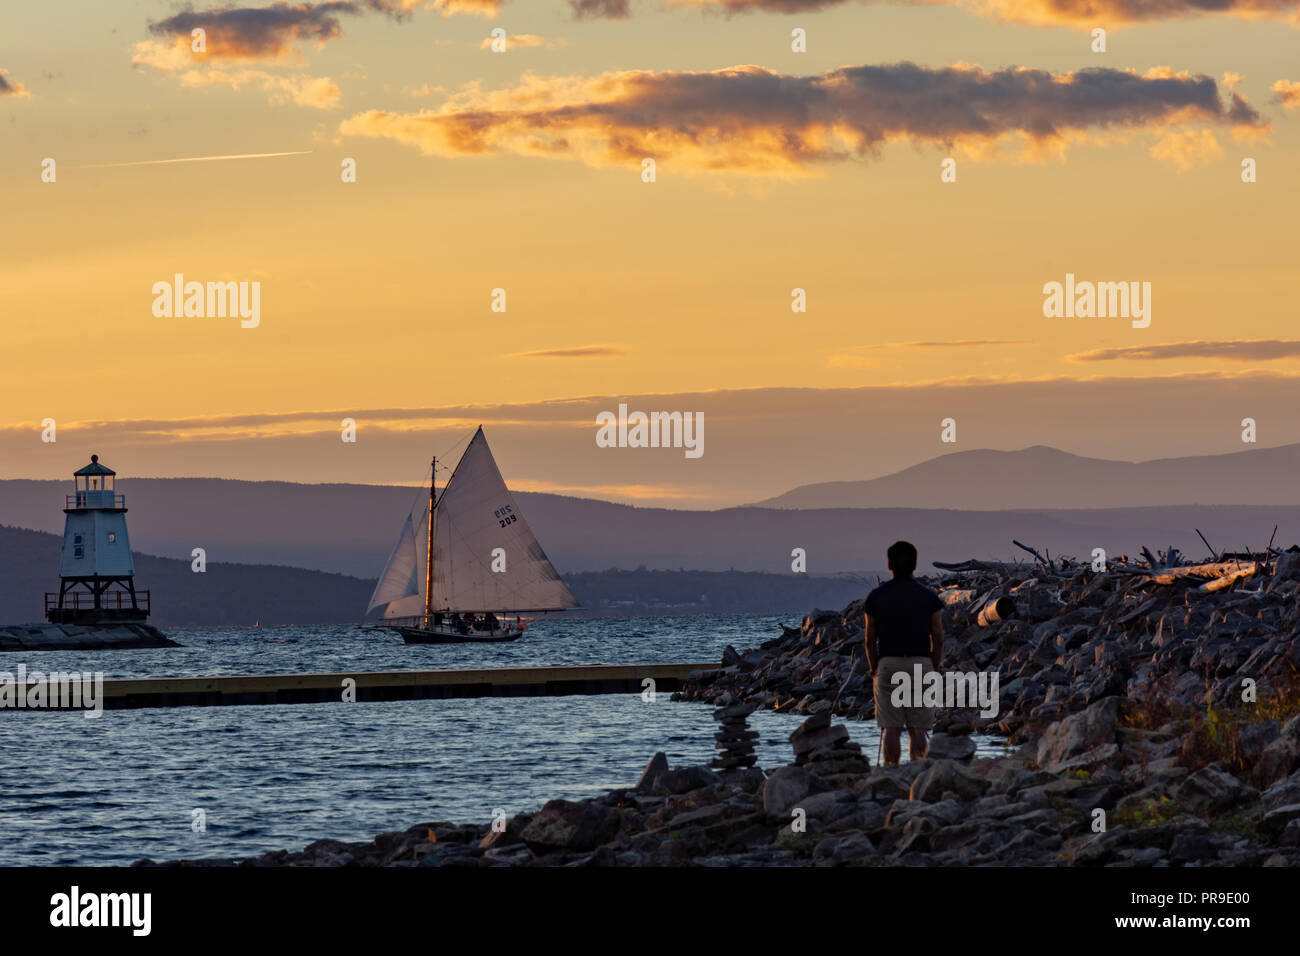 Tourist watching a sailboat pass by on Lake Champlain Stock Photo